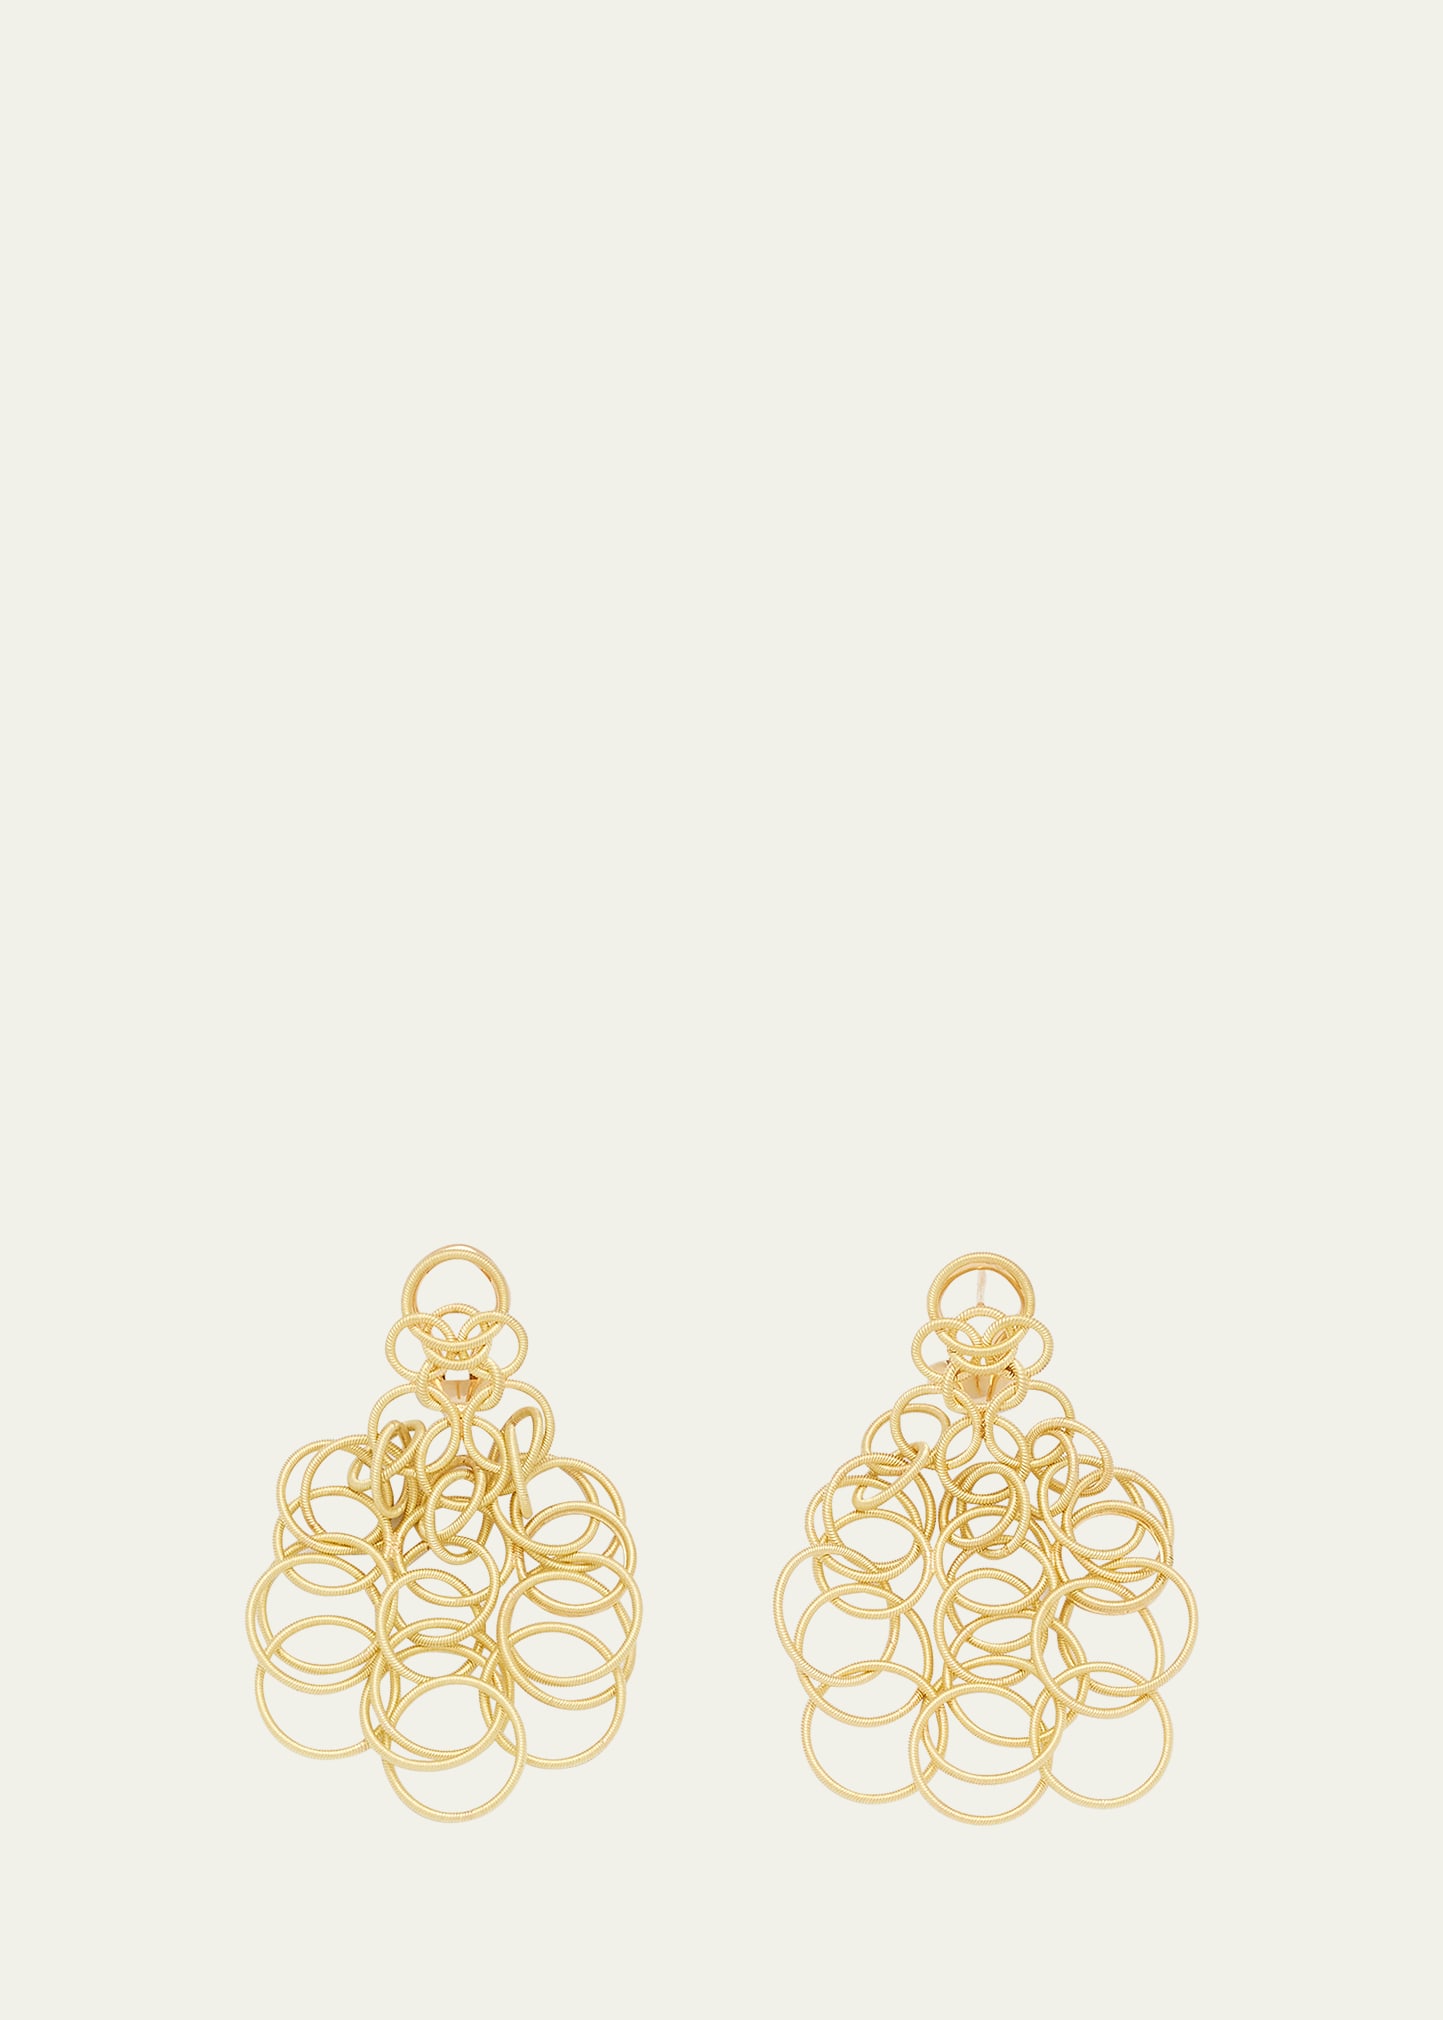 Hawaii 18K Yellow Gold Chandelier Earrings, 2"L